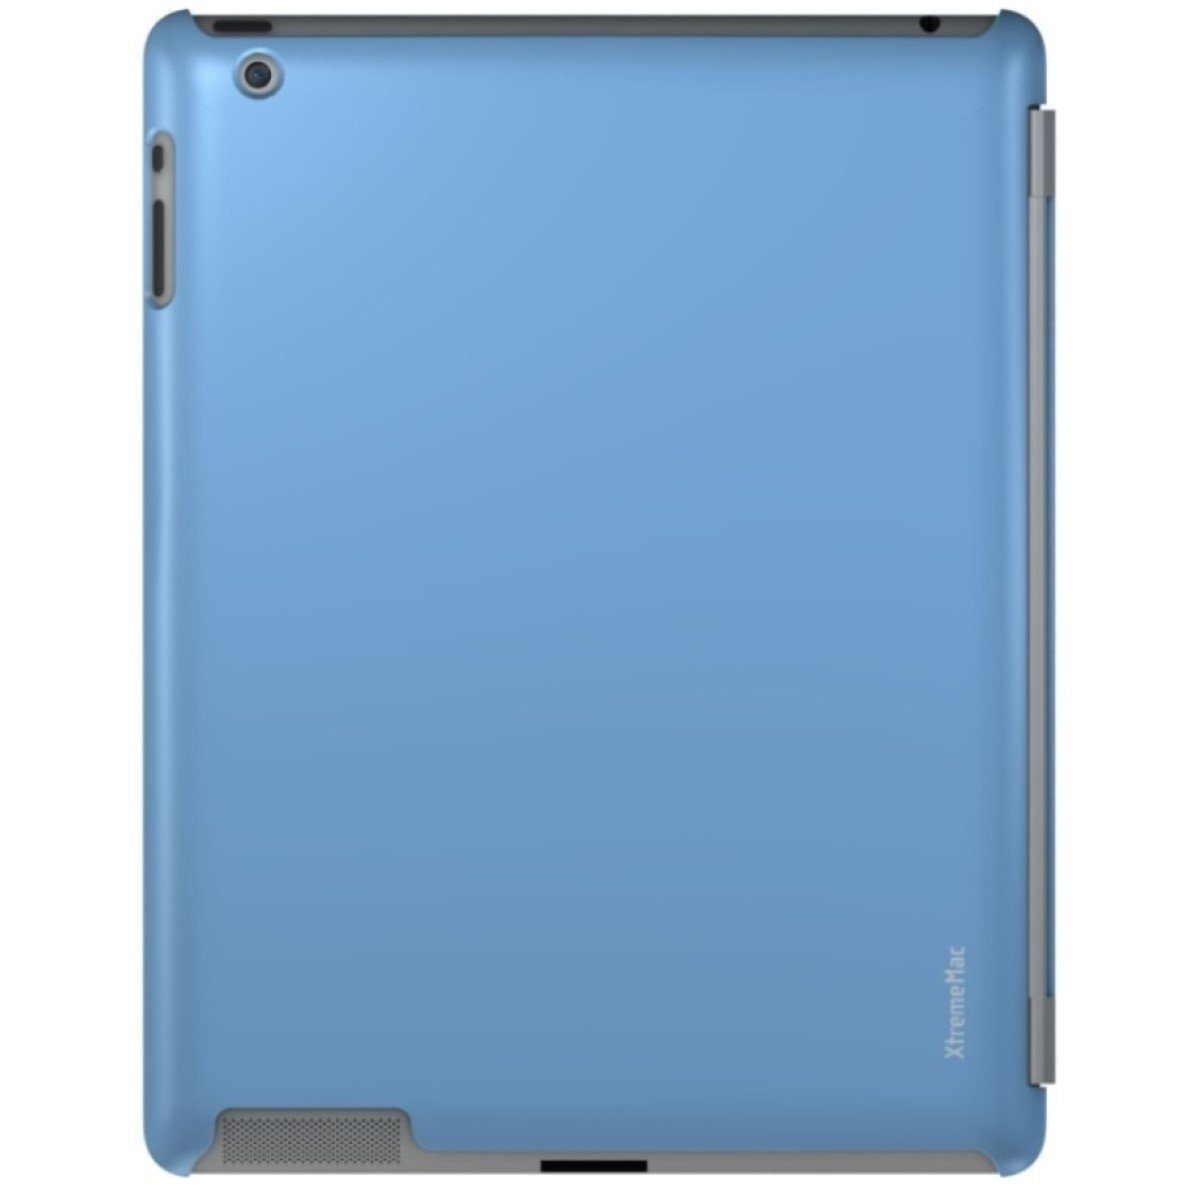 XtremeMac Tablet-Hülle Cover Schutz-Hülle Smart Case Tasche Hellblau, Hard-Case passend für Apple iPad 4 3 4G 3G 2 2G